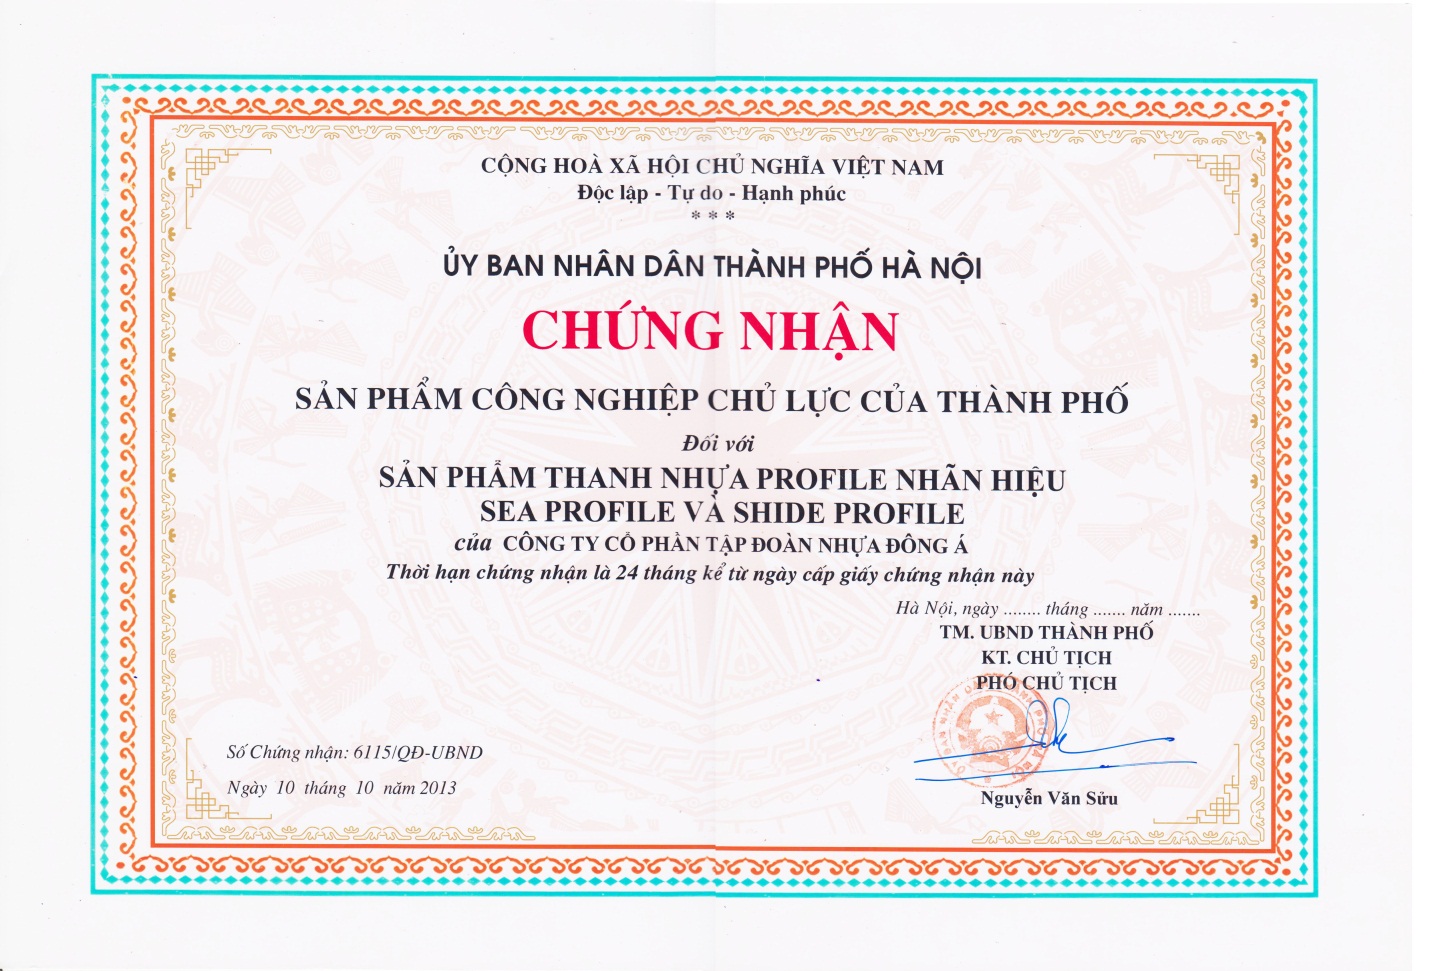 DAG được công nhận là sản phẩm chủ lực của TP Hà Nội